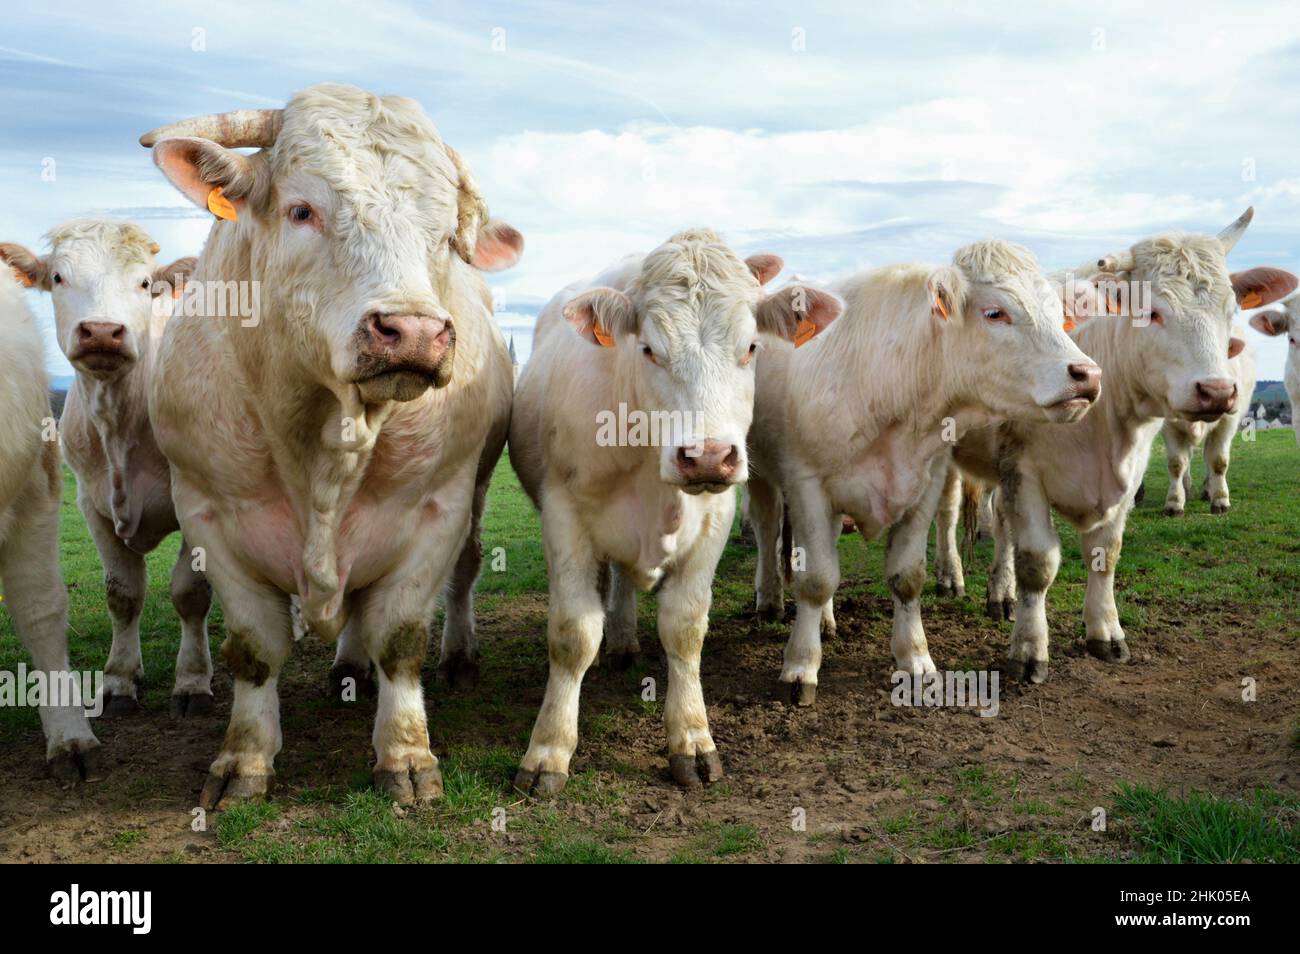 Un troupeau de vaches Charolais avec taureau dans un champ, à la campagne. Banque D'Images